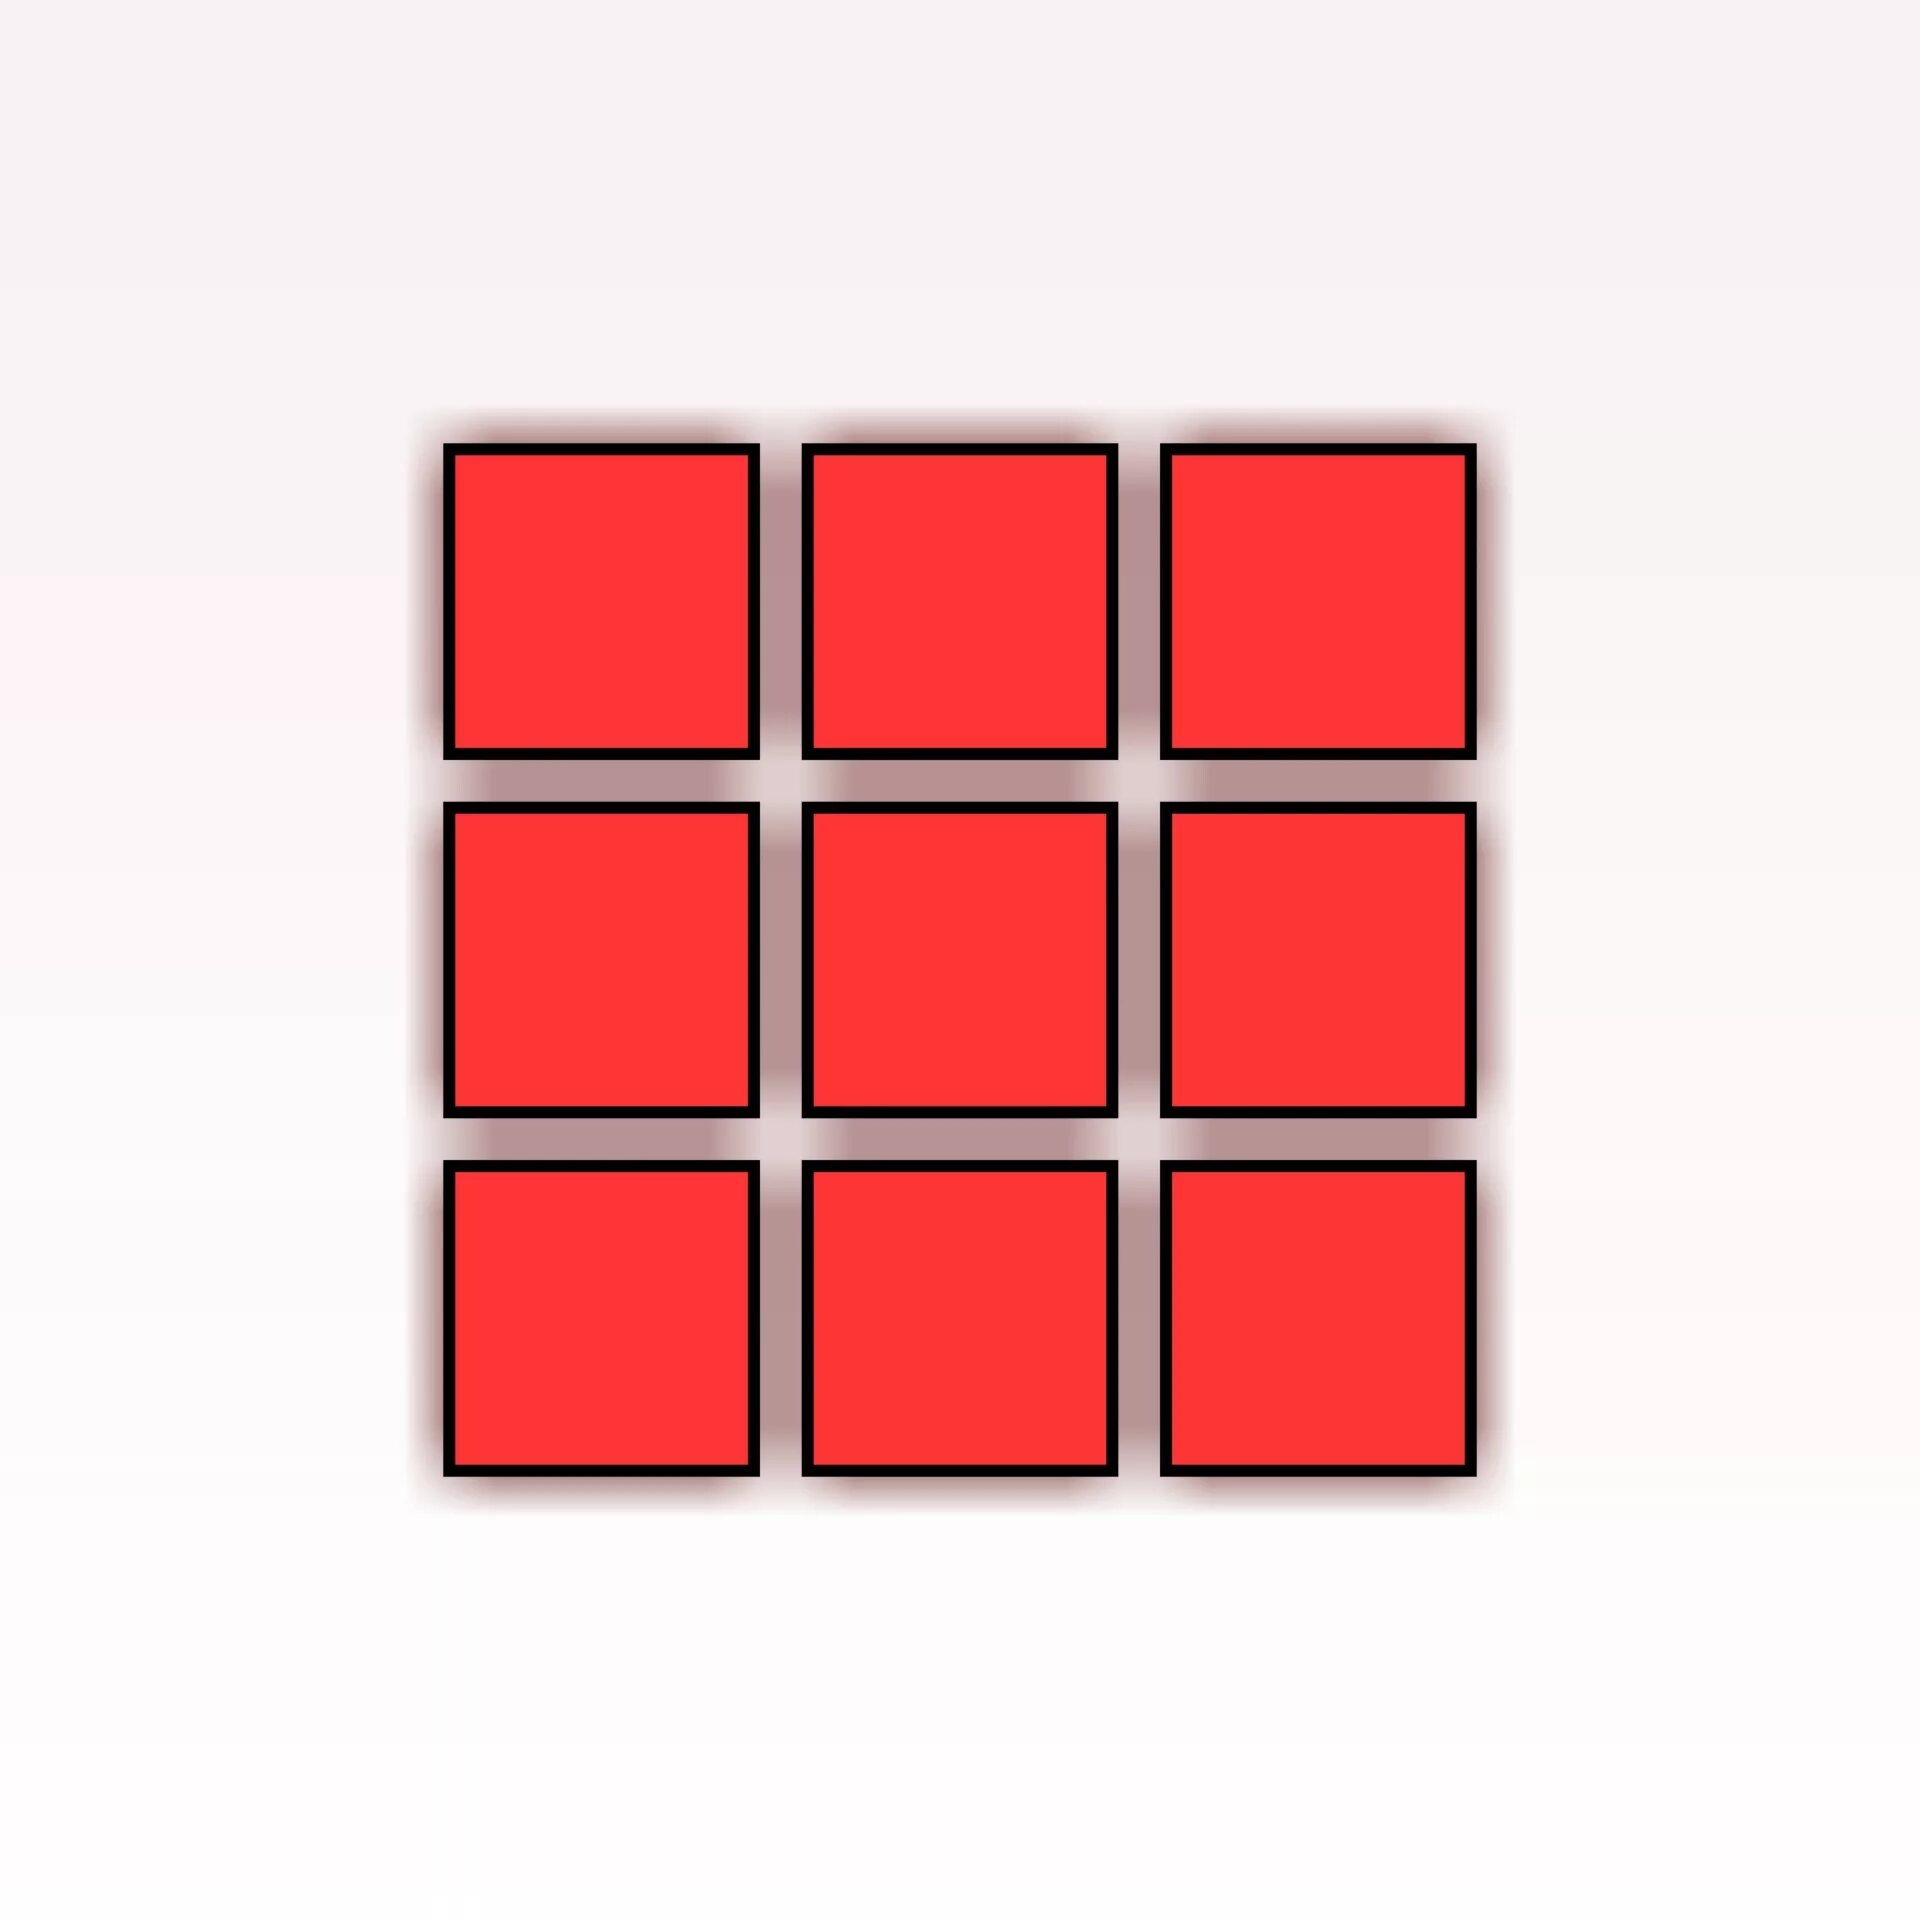 Красный квадрат. Красный квадратик. Квадраты раздаточный материал. Красный квадрат на белом фоне. Звуки квадратики